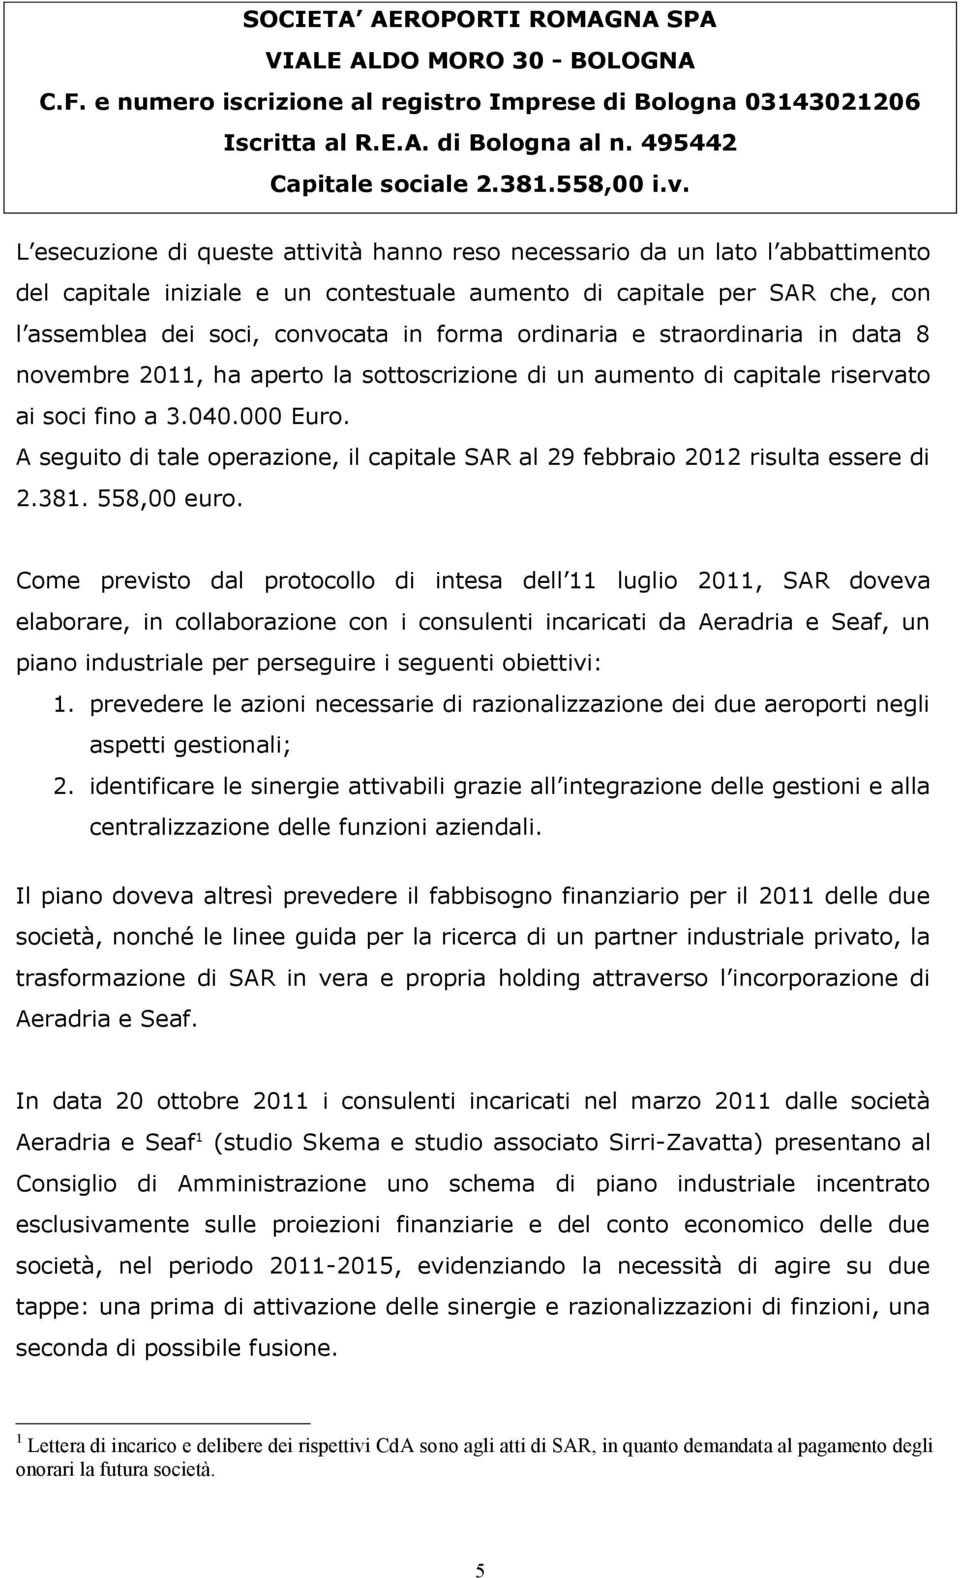 A seguito di tale operazione, il capitale SAR al 29 febbraio 2012 risulta essere di 2.381. 558,00 euro.